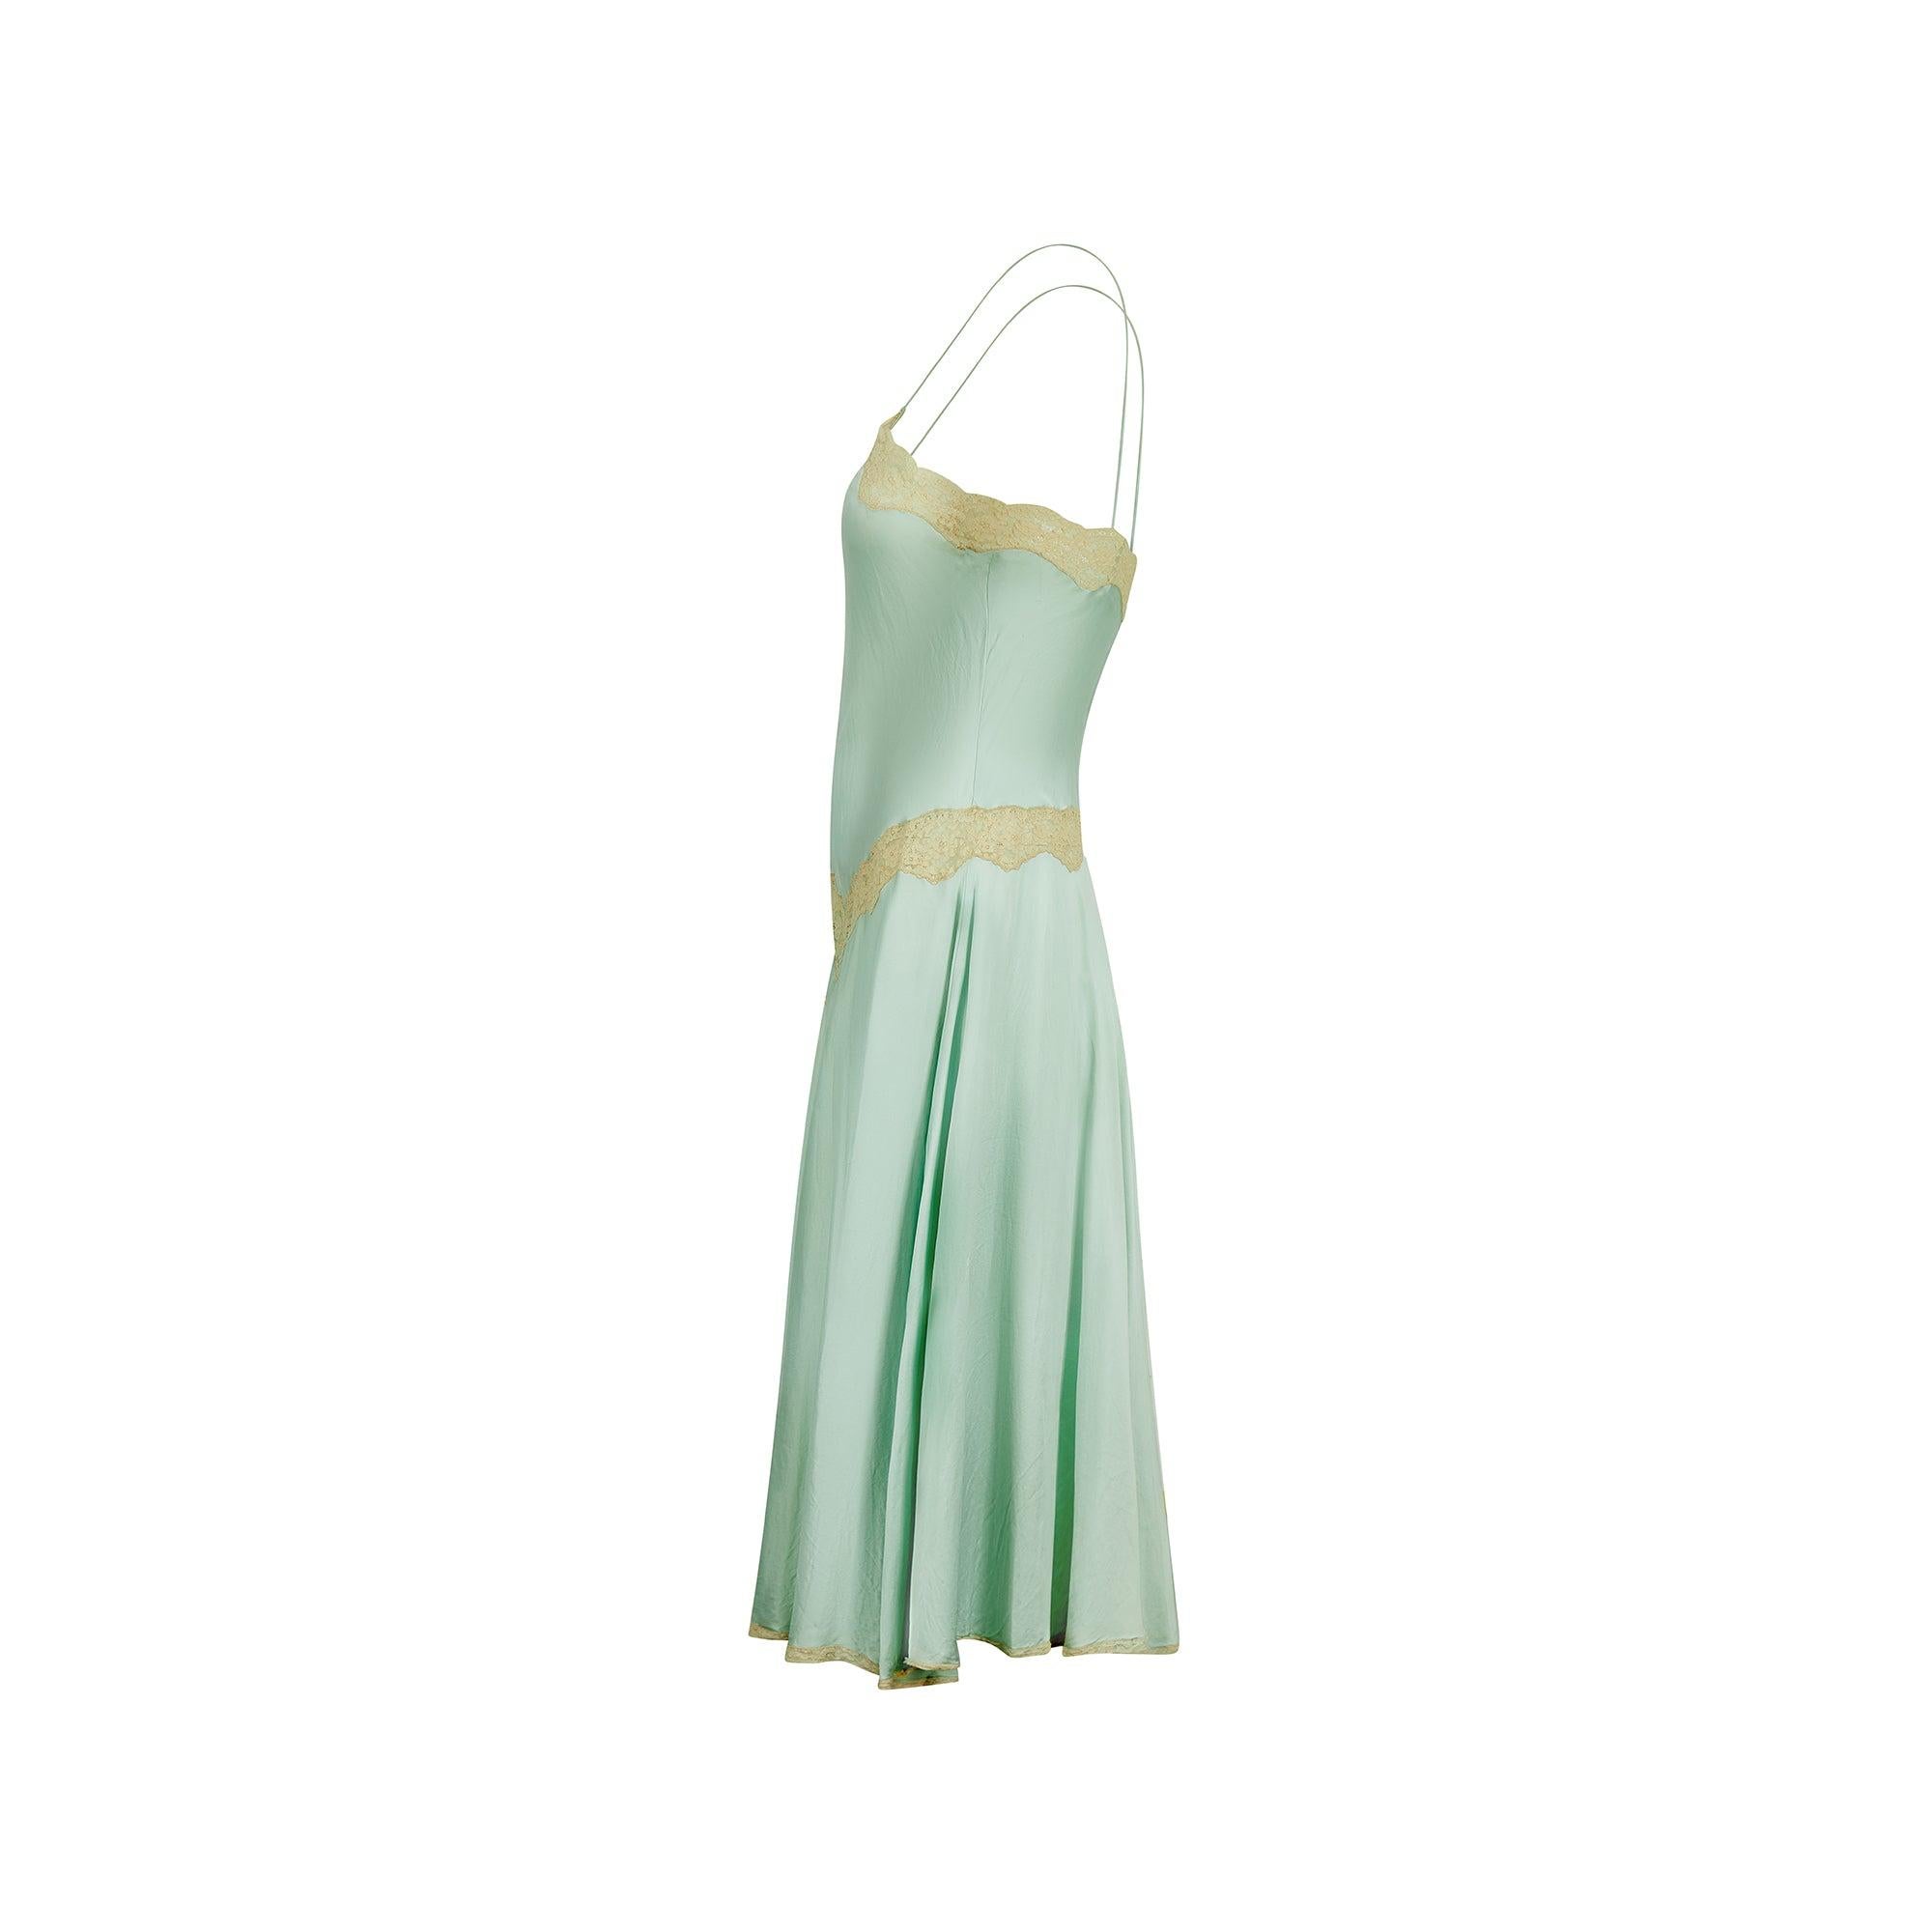 Dieses elegante Slip-Kleid ist aus wunderschöner meergrüner Seide geschnitten und mit heller, cremefarbener Spitze besetzt. Das in den 1980er Jahren vom Luxus-Dessous-Label Jenny Dobell kreierte Modell orientiert sich an klassischen Silhouetten der